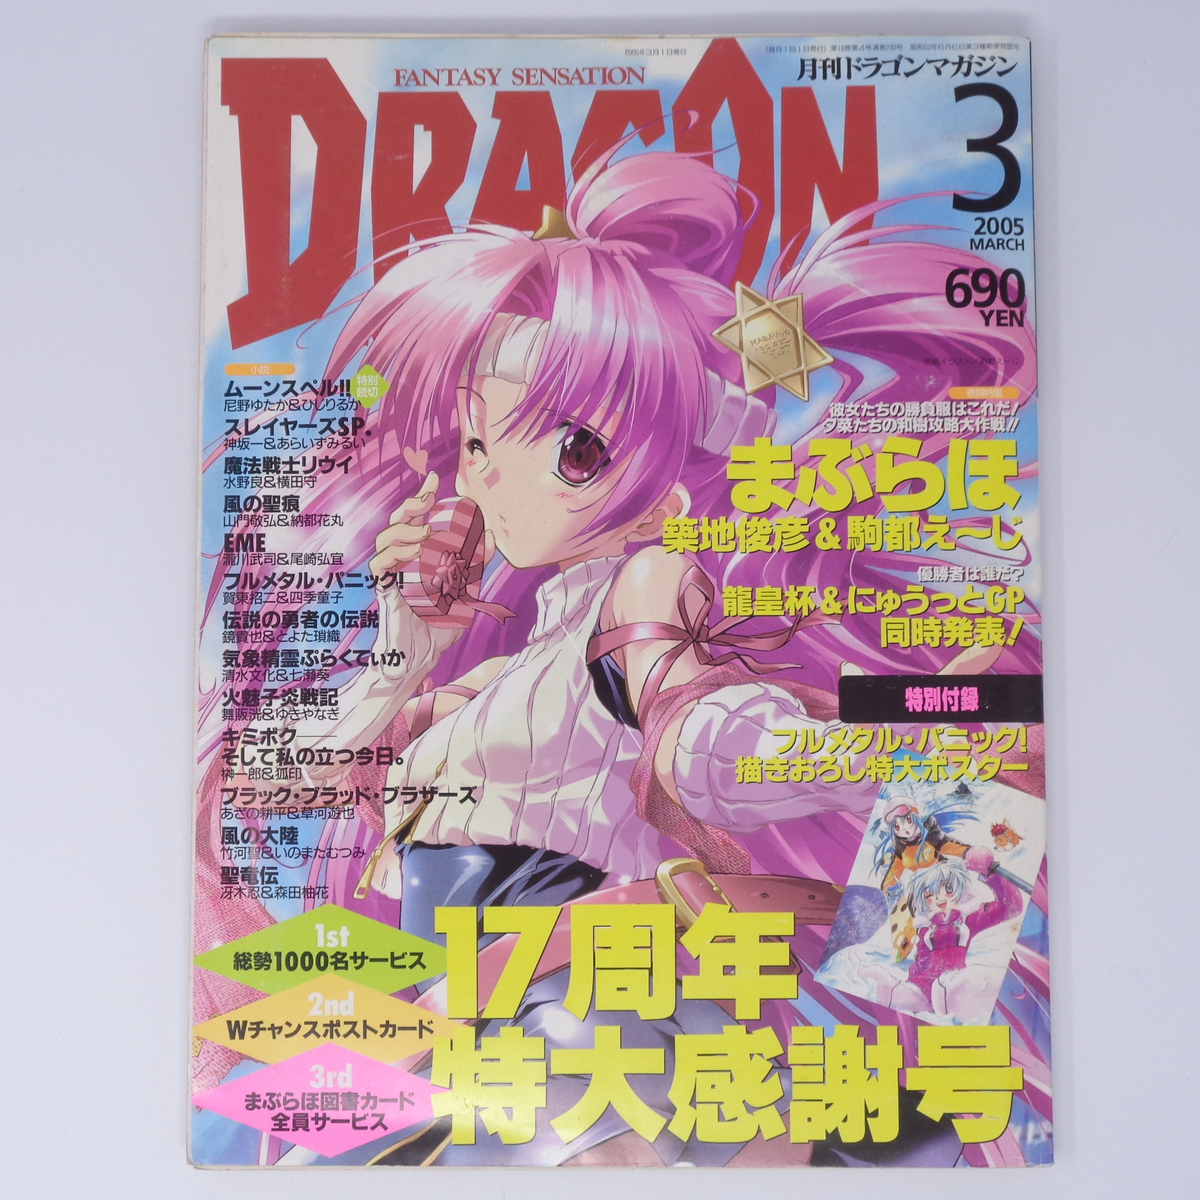  ежемесячный Dragon журнал DRAGON MAGAZINE 2005 год 3 месяц номер отдельный выпуск дополнение постер нет /..../ Slayers SP./ журнал [Free Shipping]